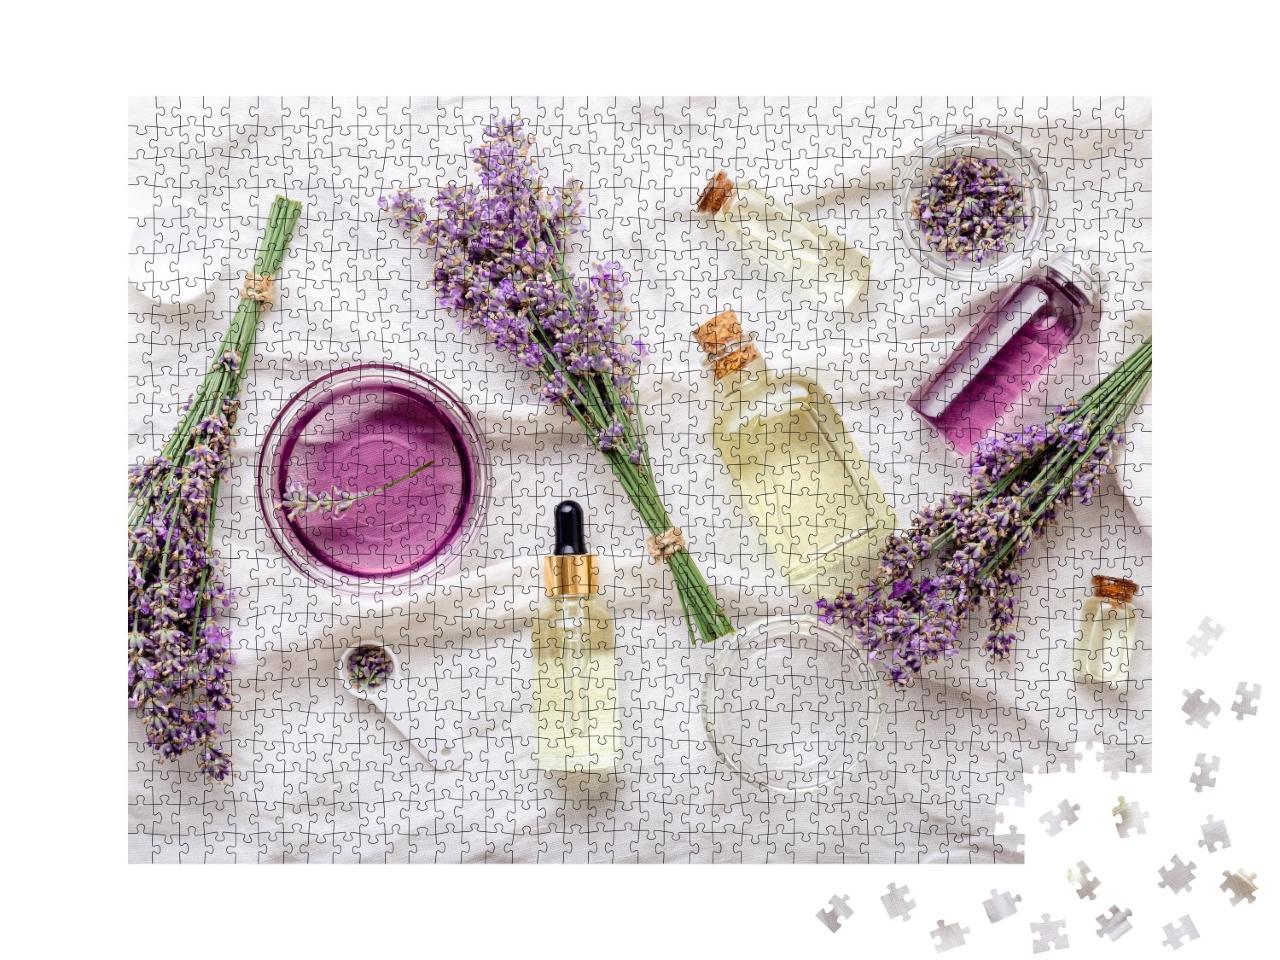 Puzzle de 1000 pièces « Sérum d'huile de lavande et fleurs de lavande sur tissu blanc, spa, beauté »